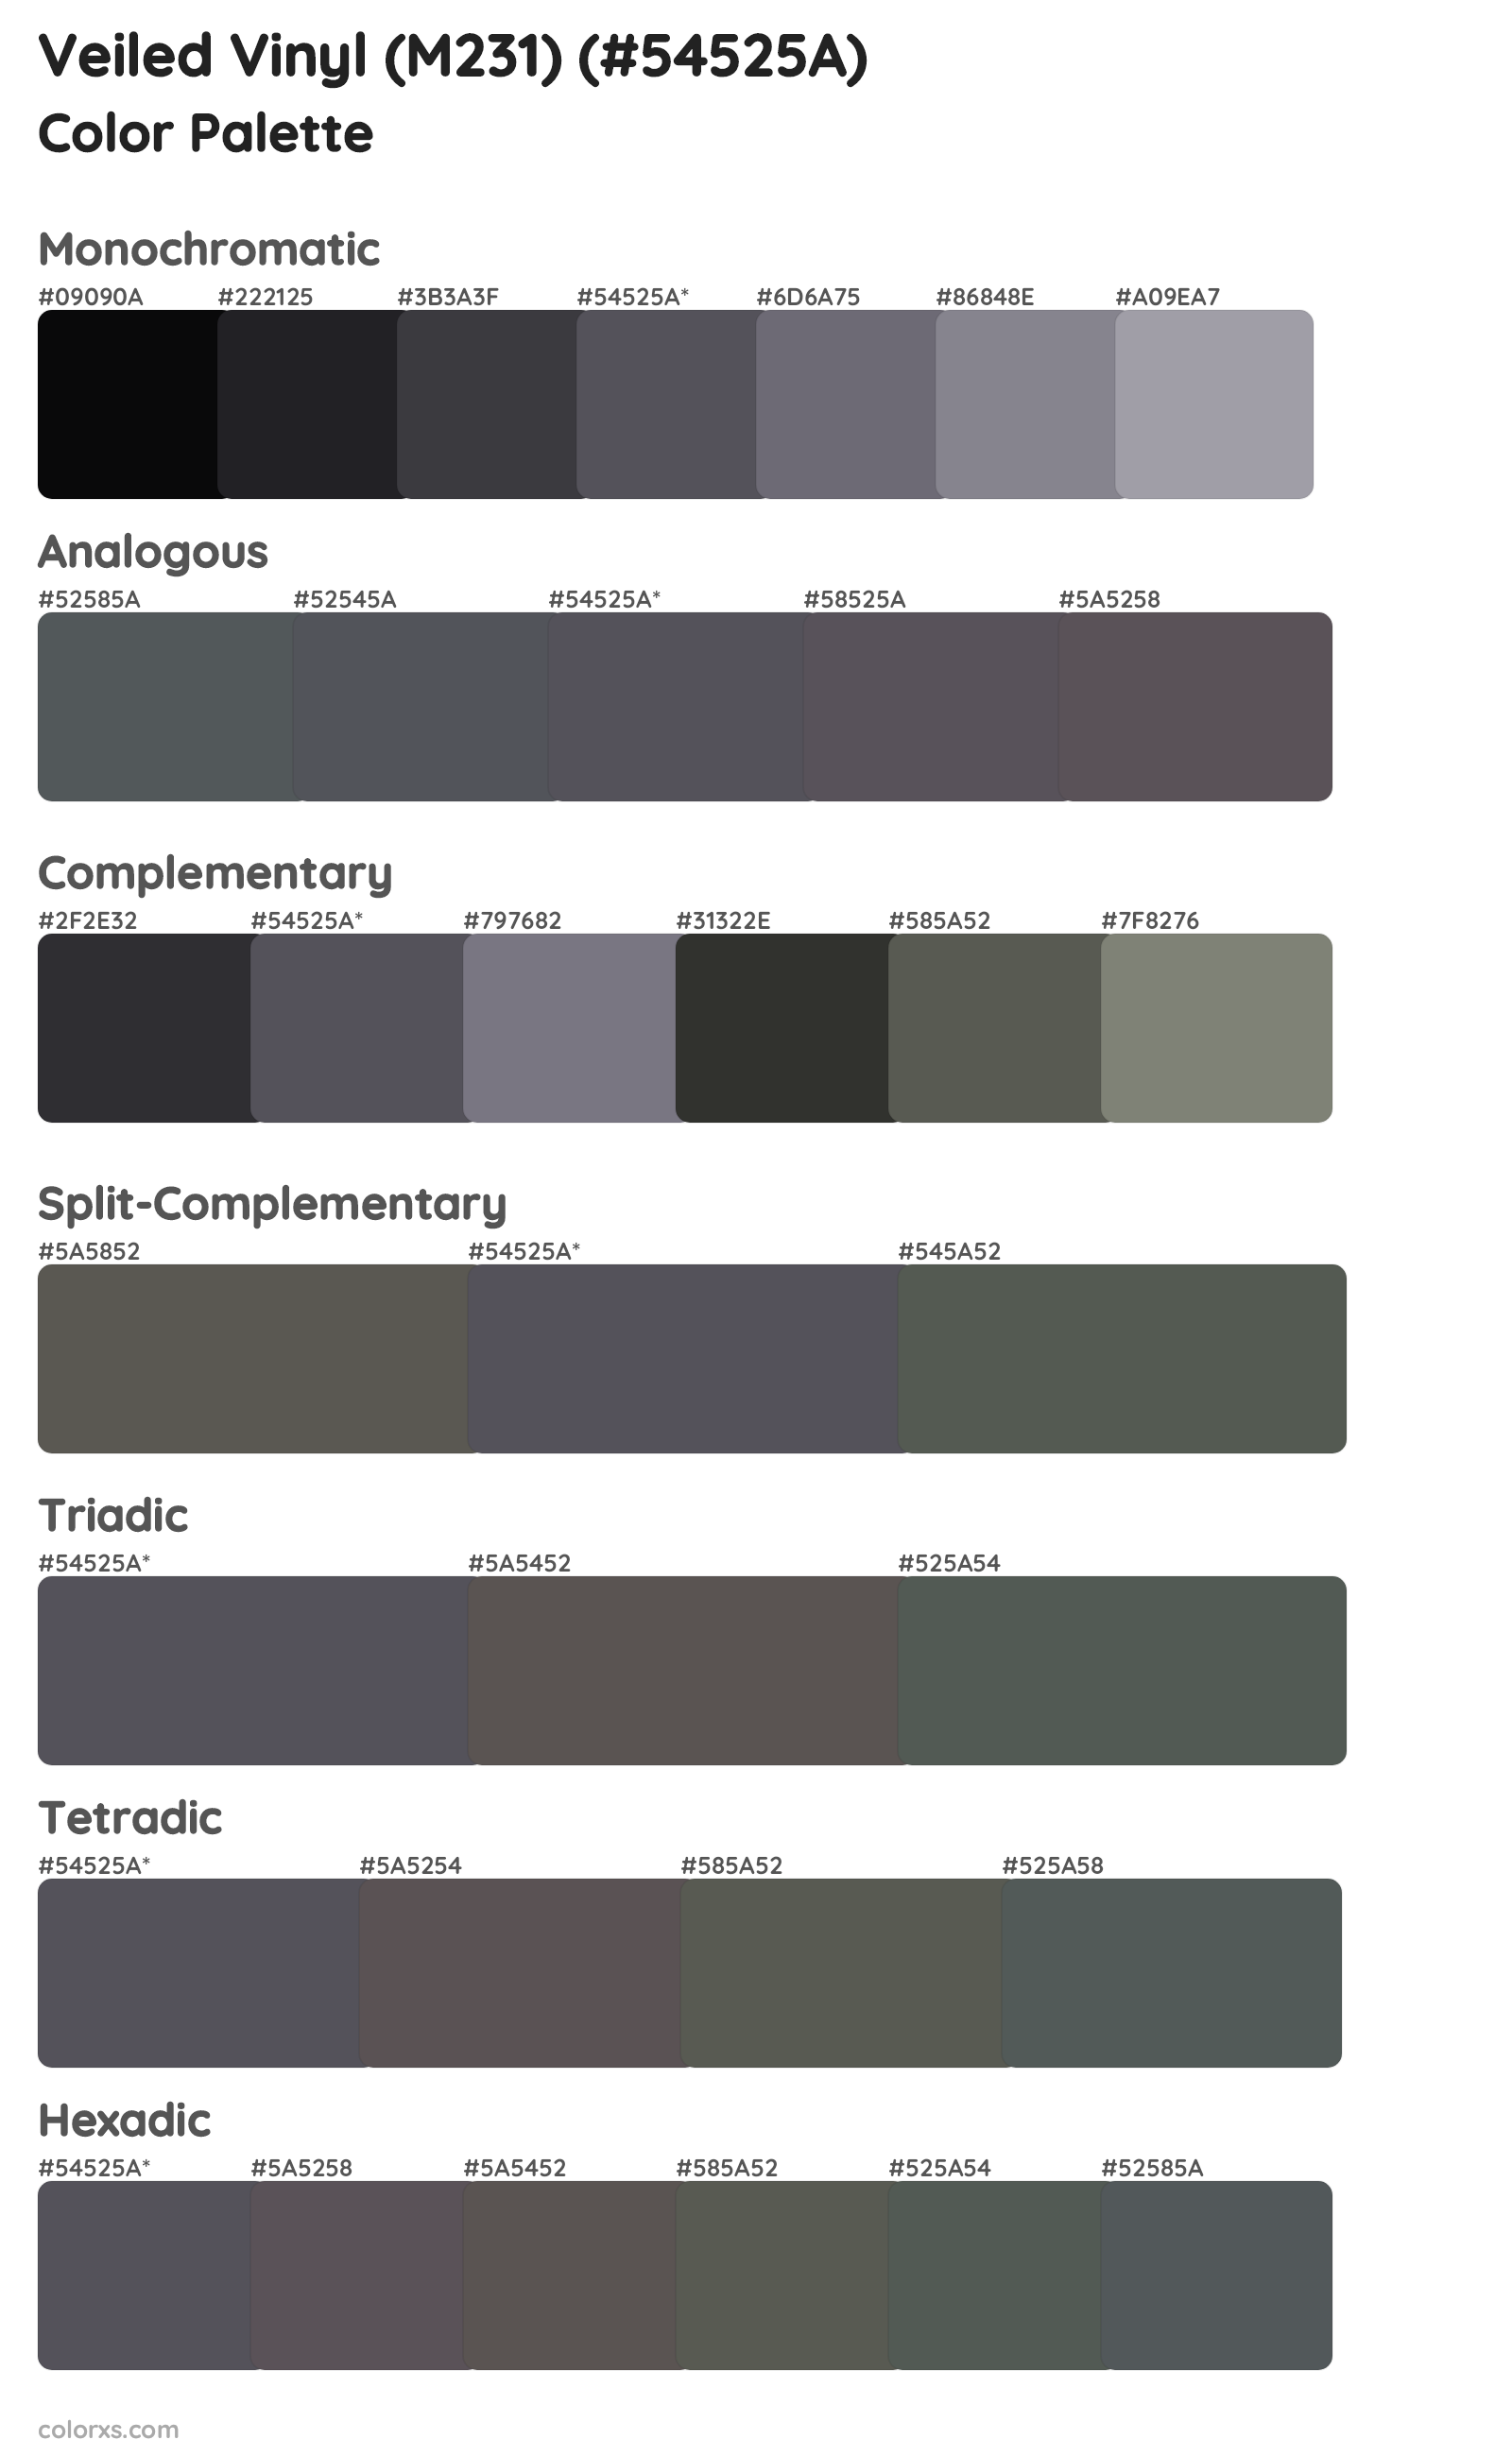 Veiled Vinyl (M231) Color Scheme Palettes